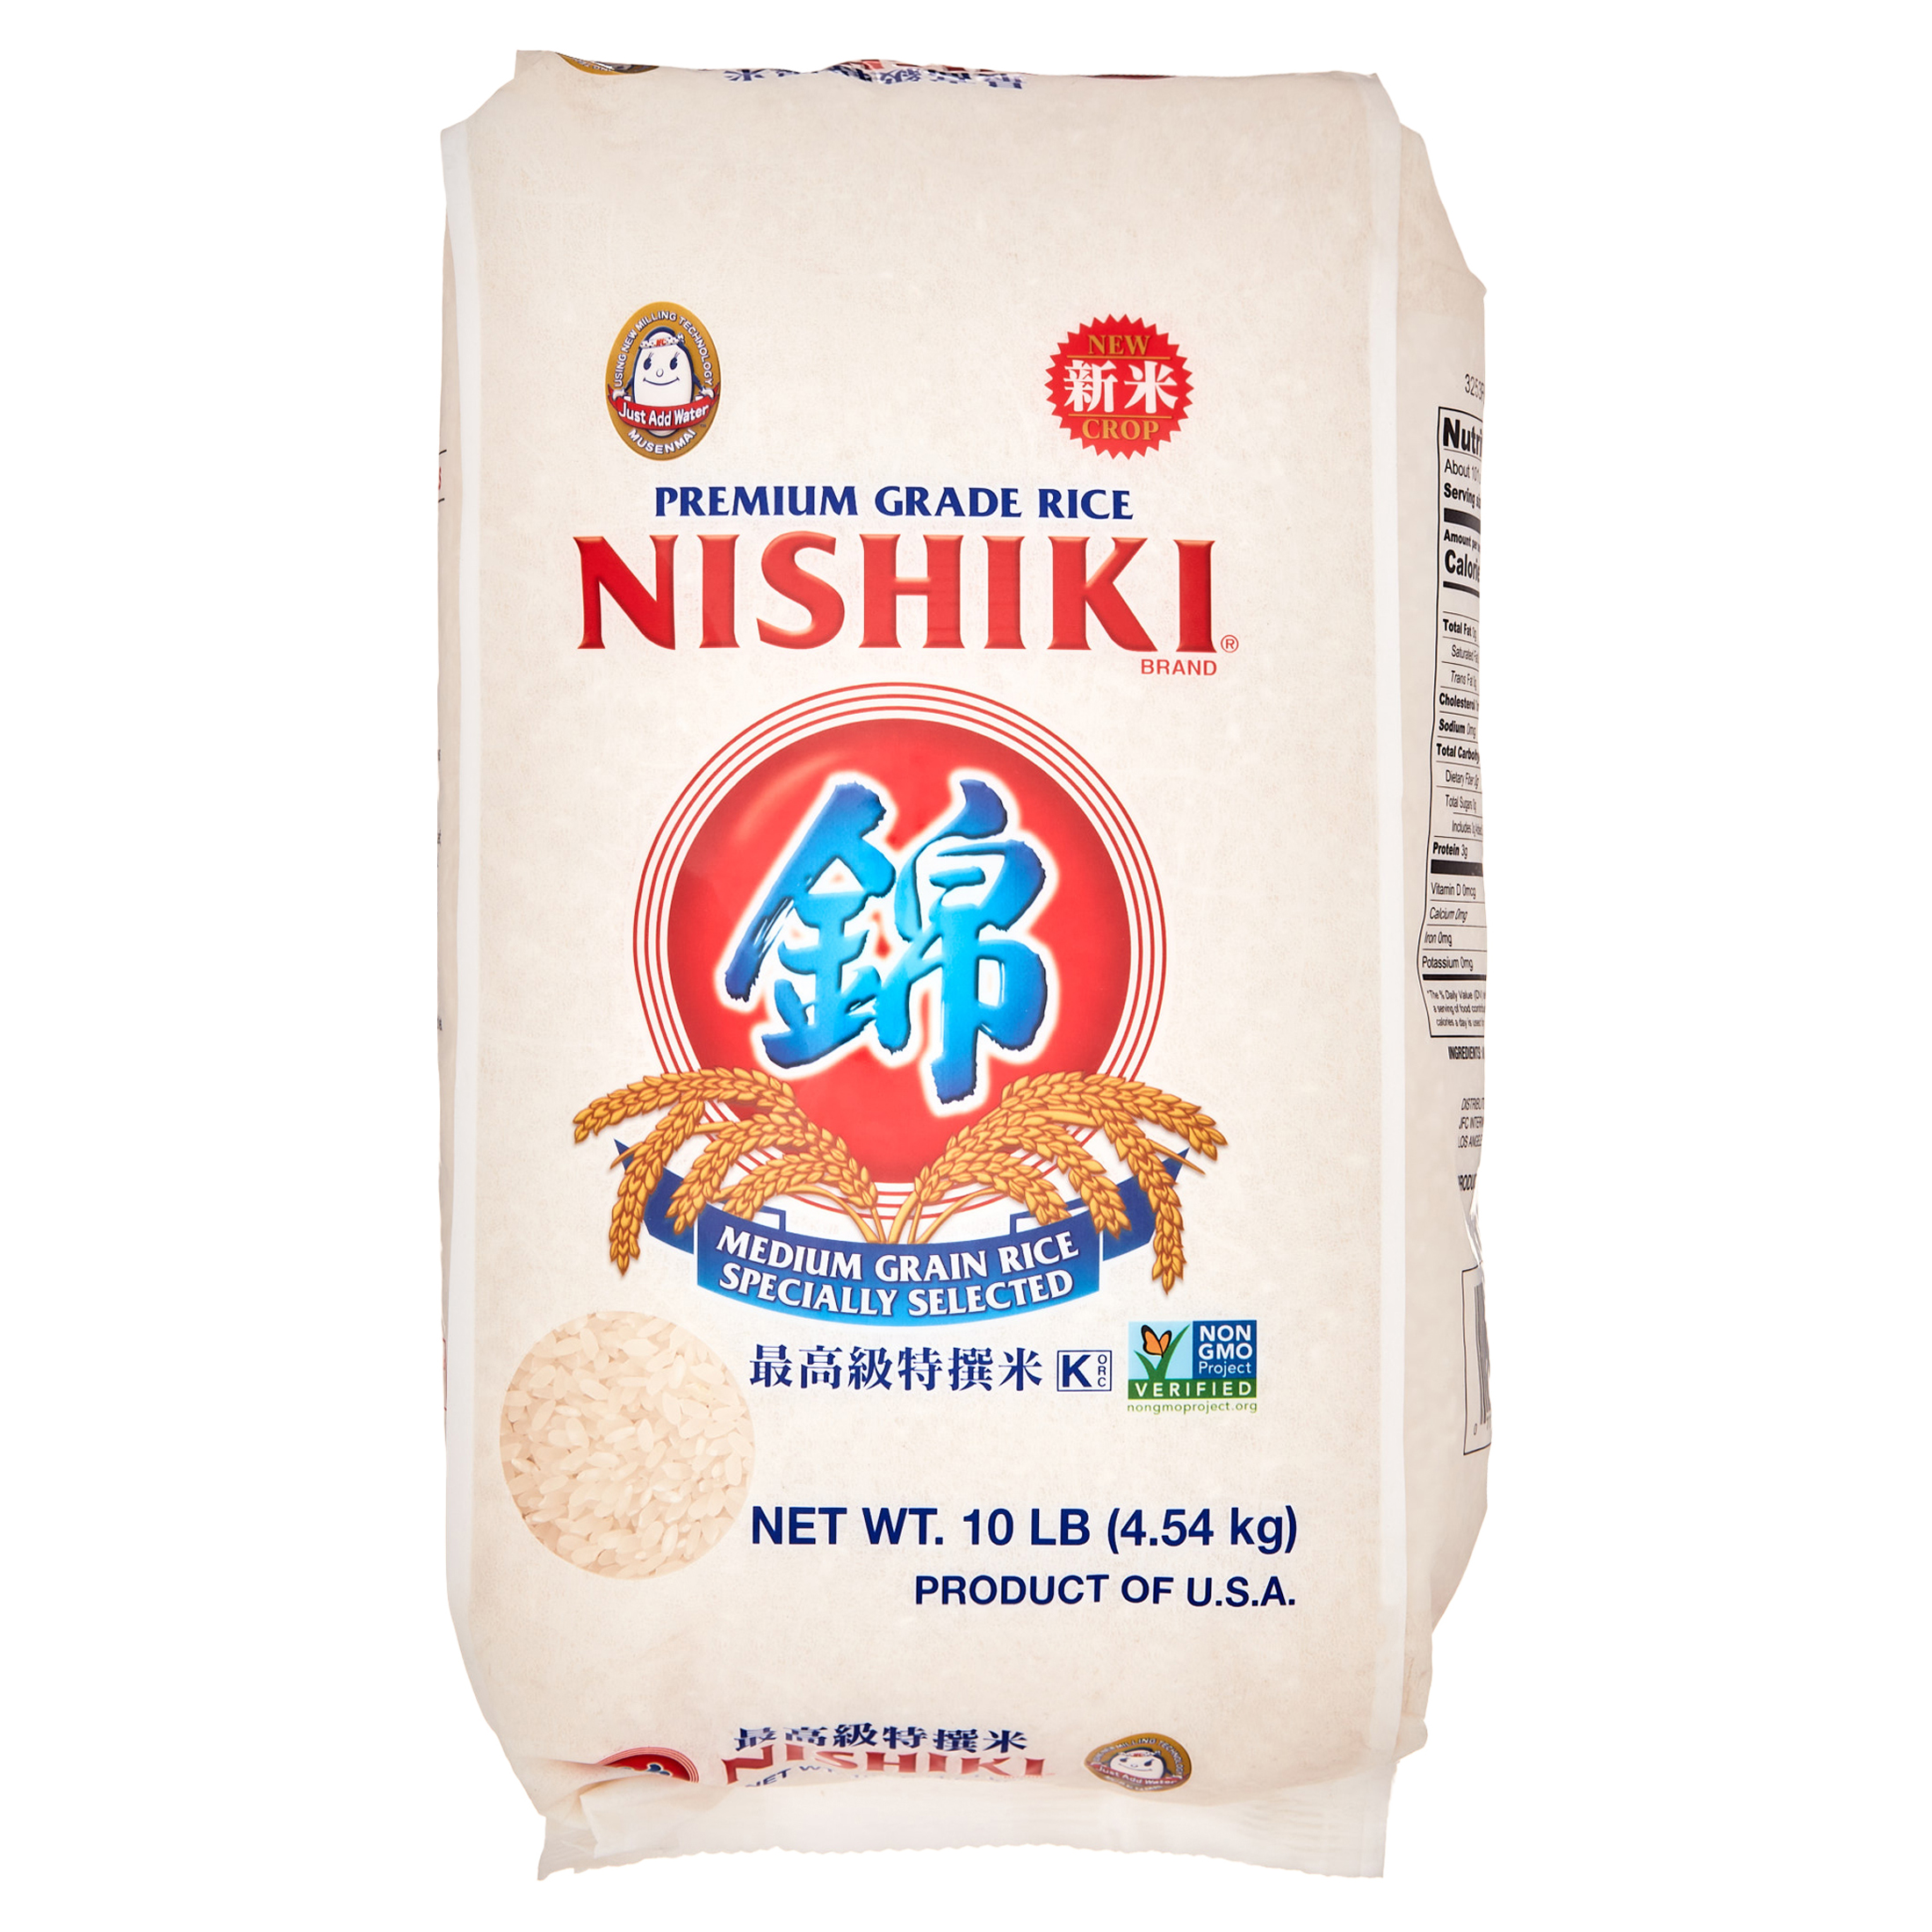 Nishiki Medium Grain Rice, 10 lb - image 1 of 6